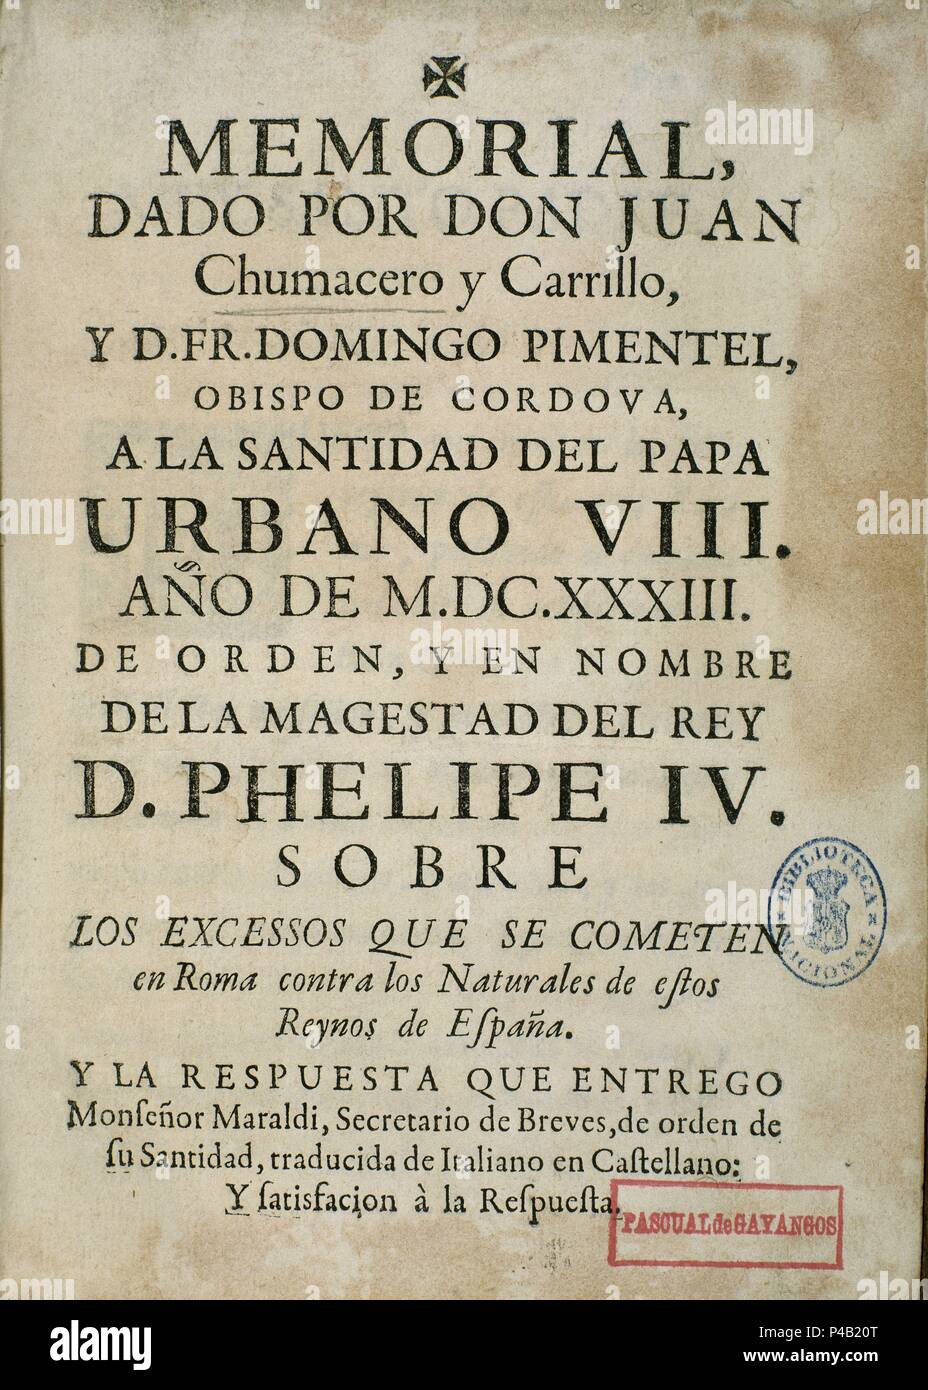 MEMORIAL DADO A EL PAPA URBANO VIII EN 1633 POR ORDEN DE FELIPE IV. Author:  CHUMACERO JUAN. Location: BIBLIOTECA NACIONAL-COLECCION, MADRID, SPAIN  Stock Photo - Alamy